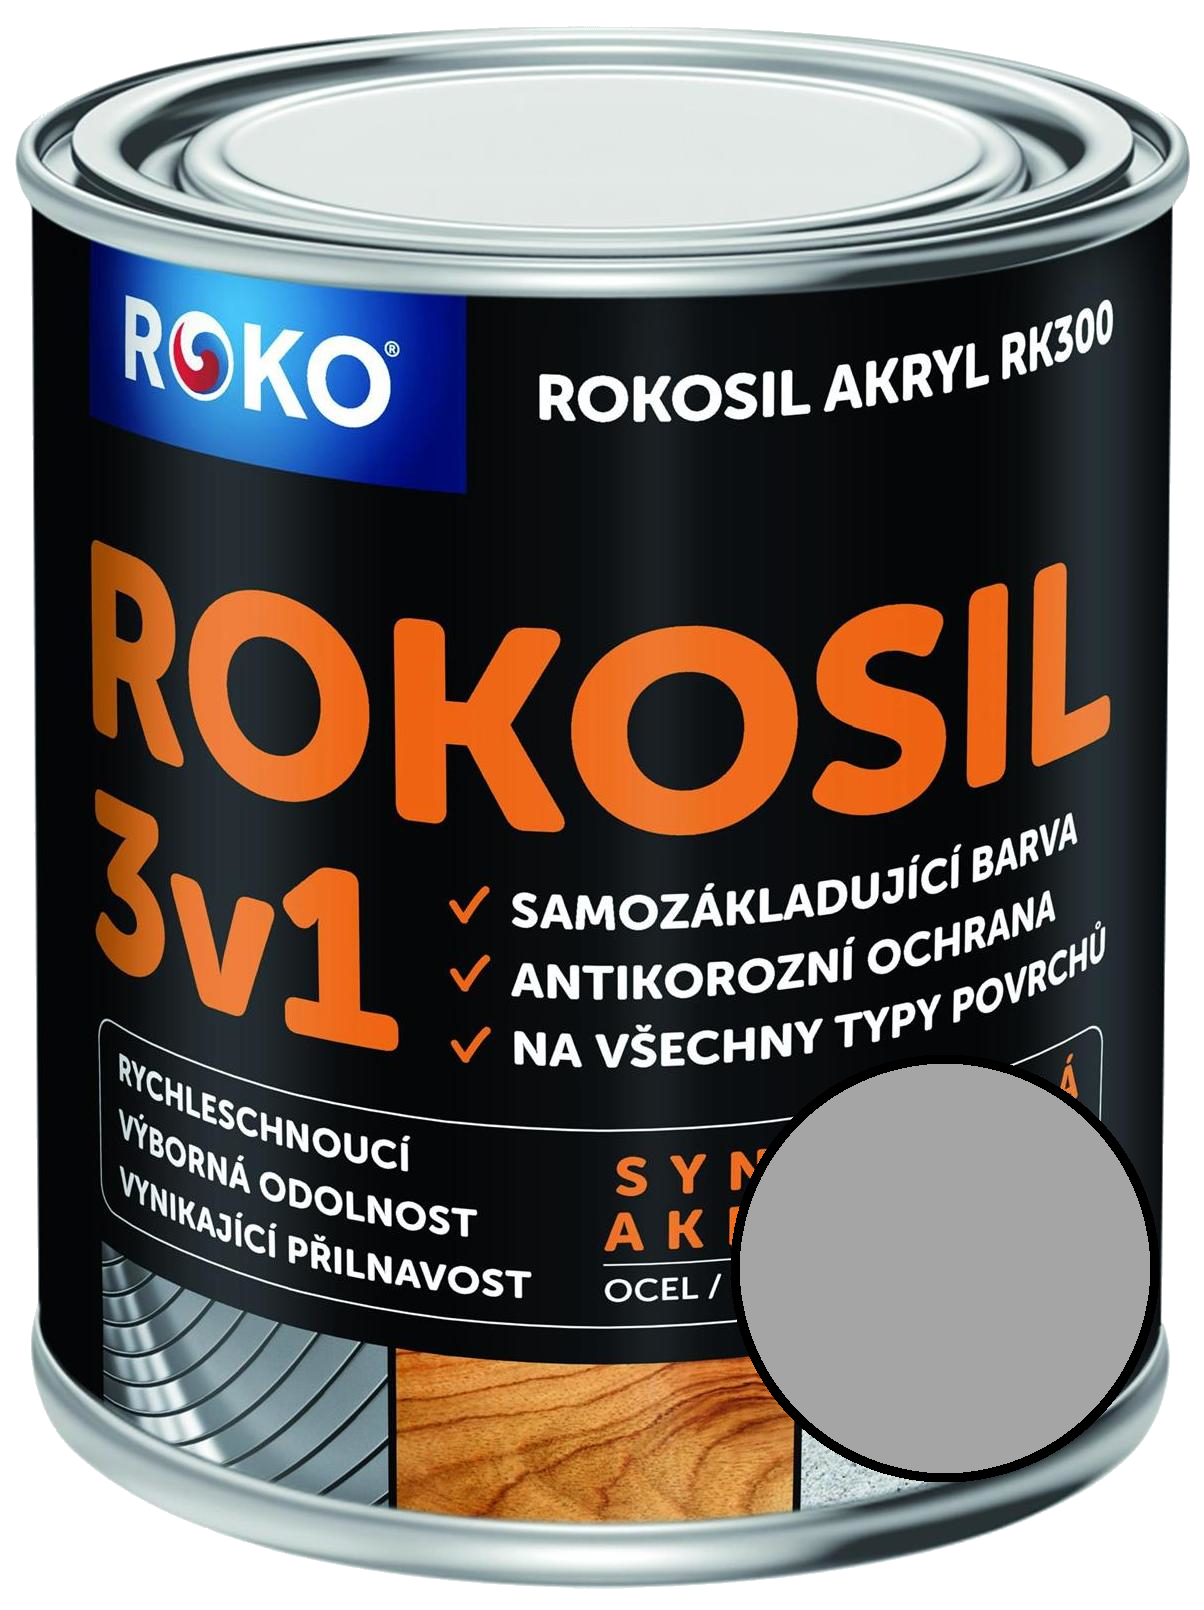 Barva samozákladující Rokosil akryl 3v1 RK 300 9110 stříbrná